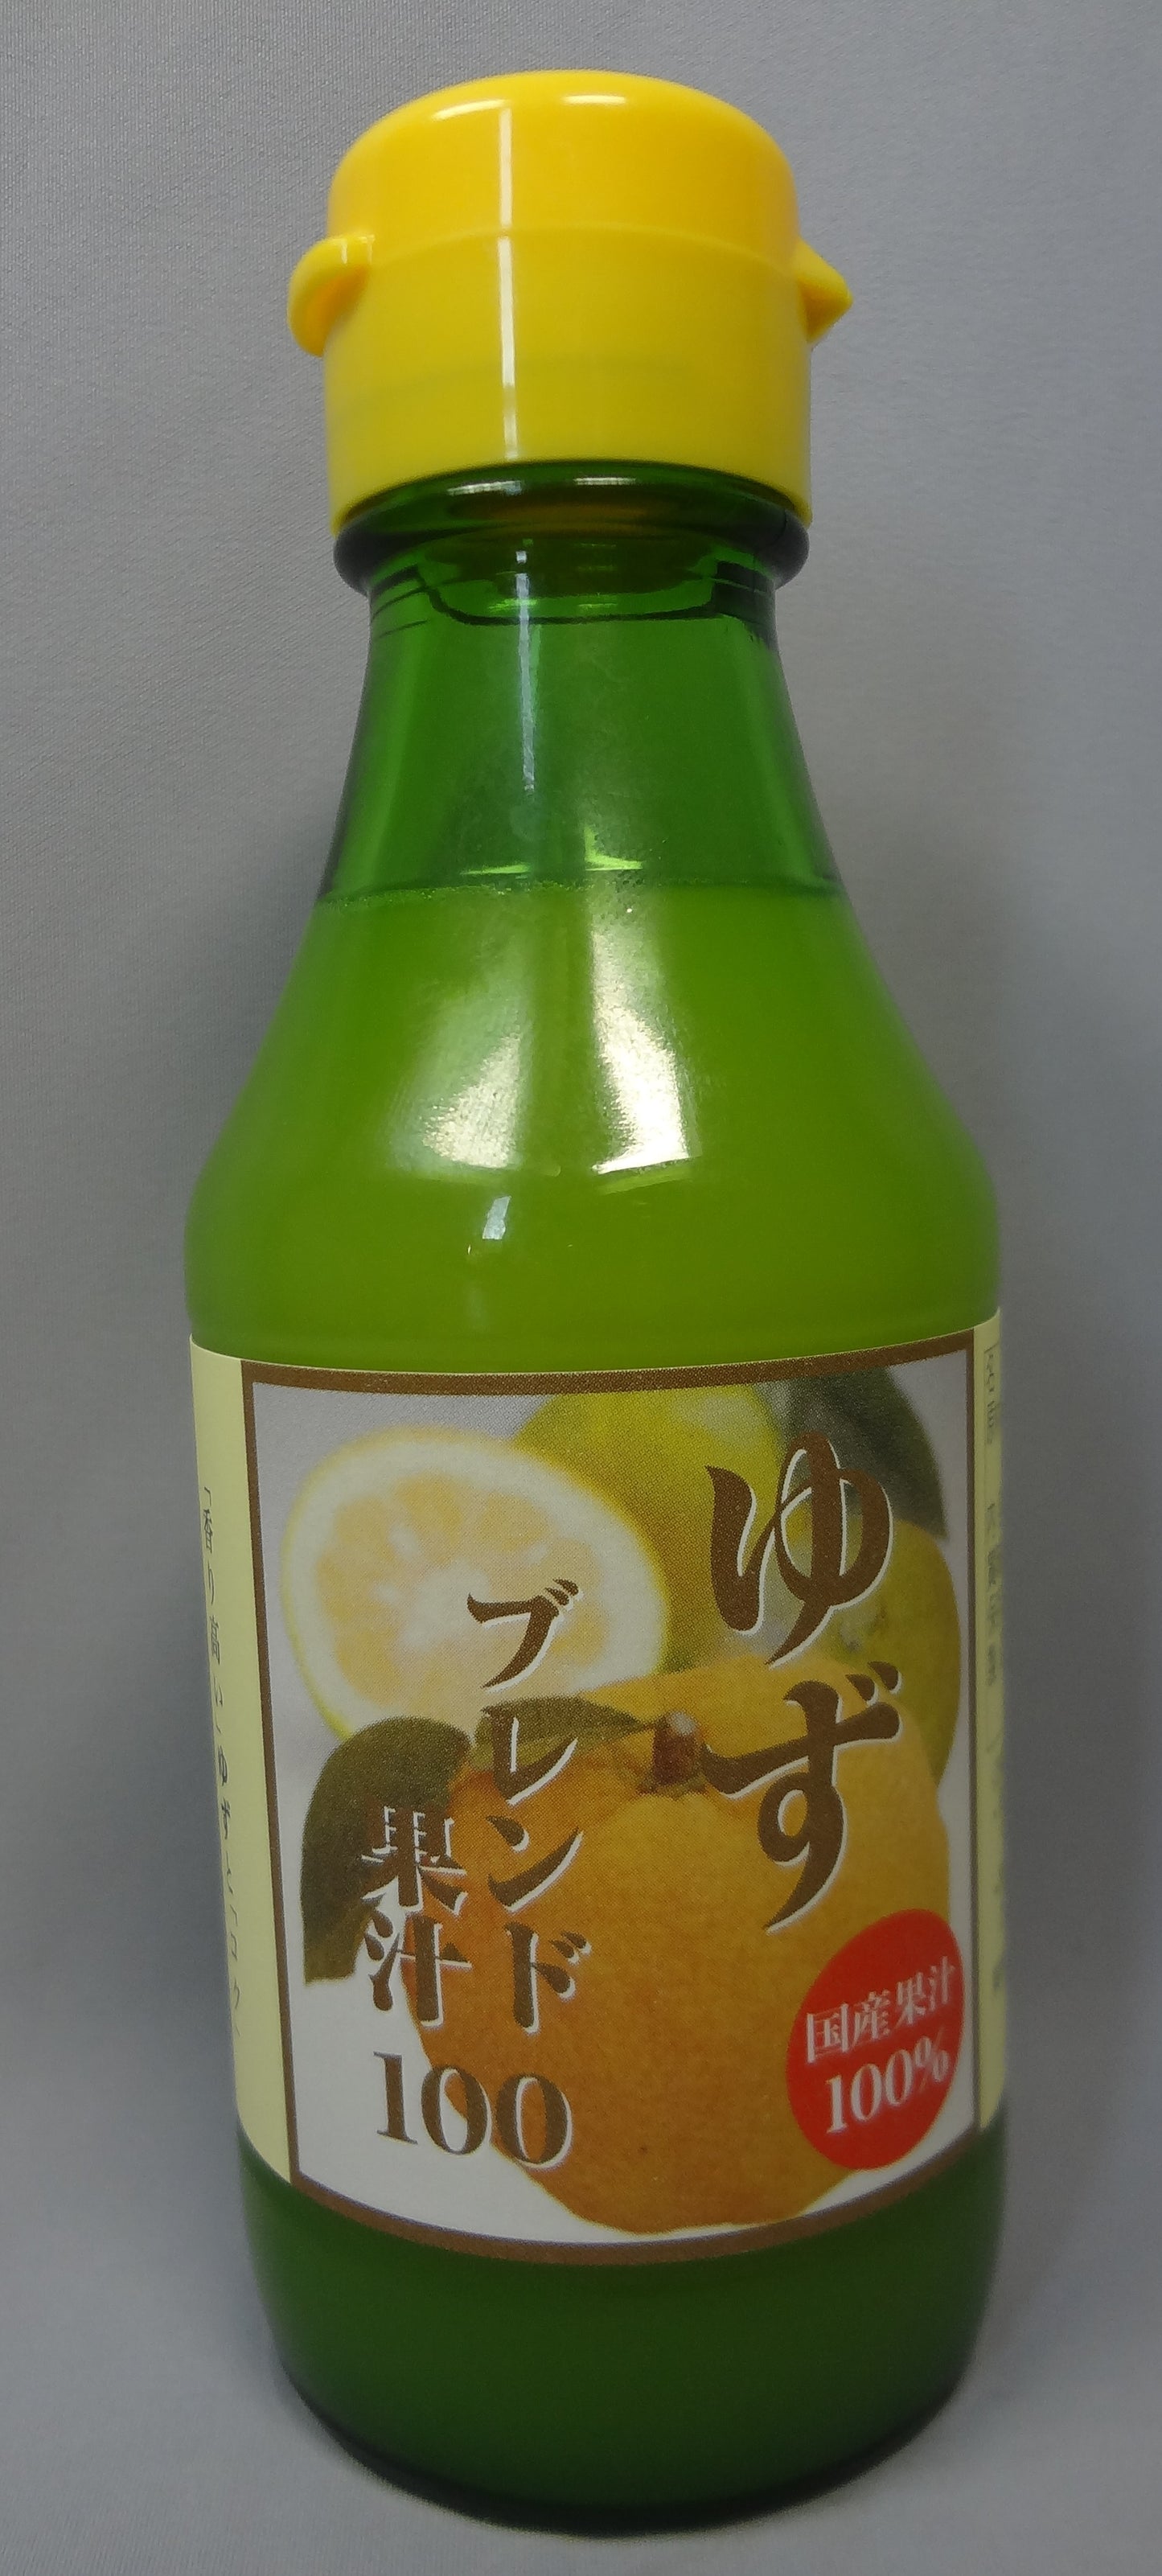 Фゆずブレンド果汁 [150ml]